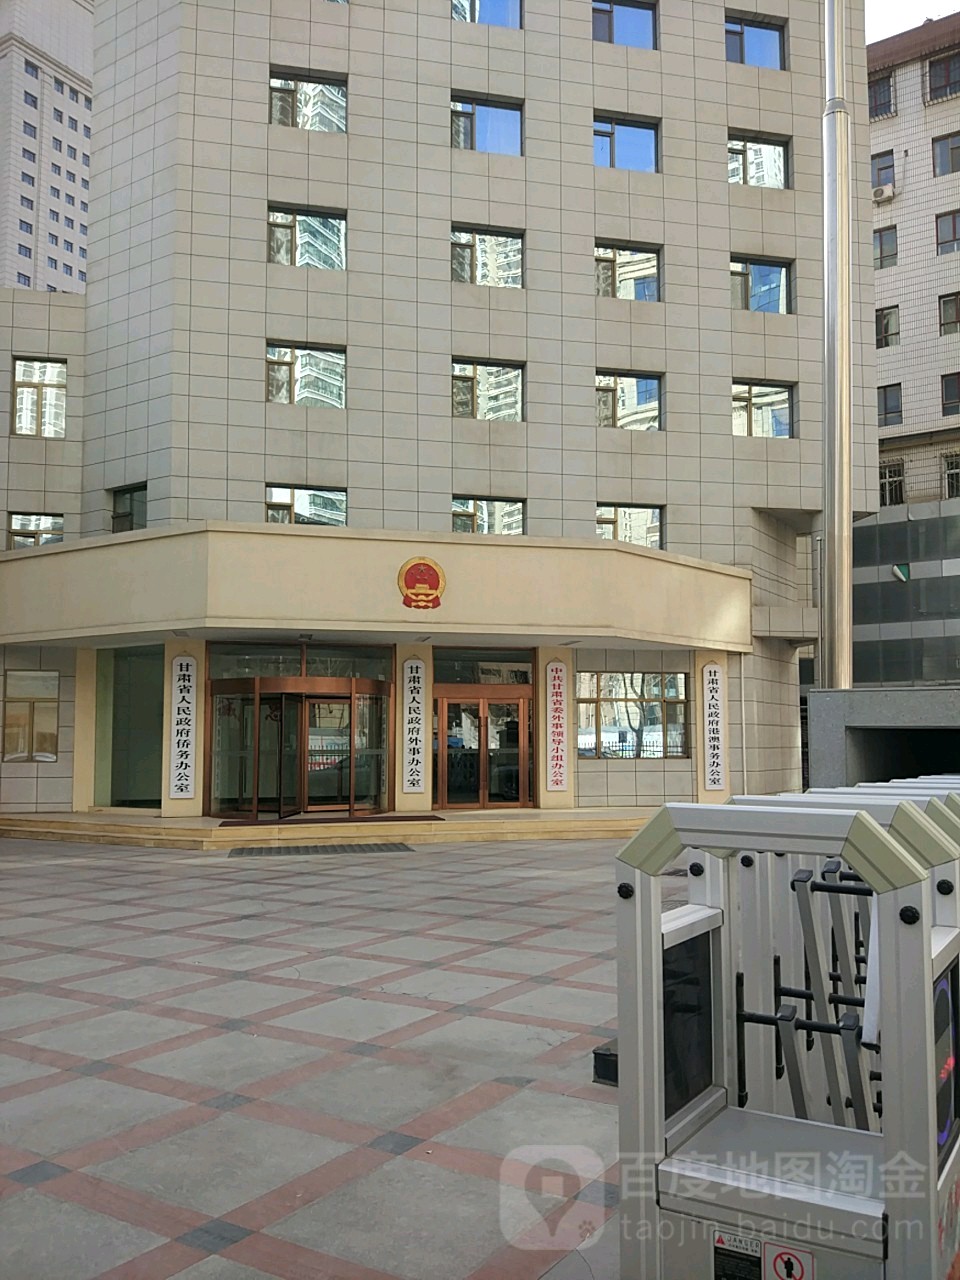 甘肃省人民政府办公楼图片